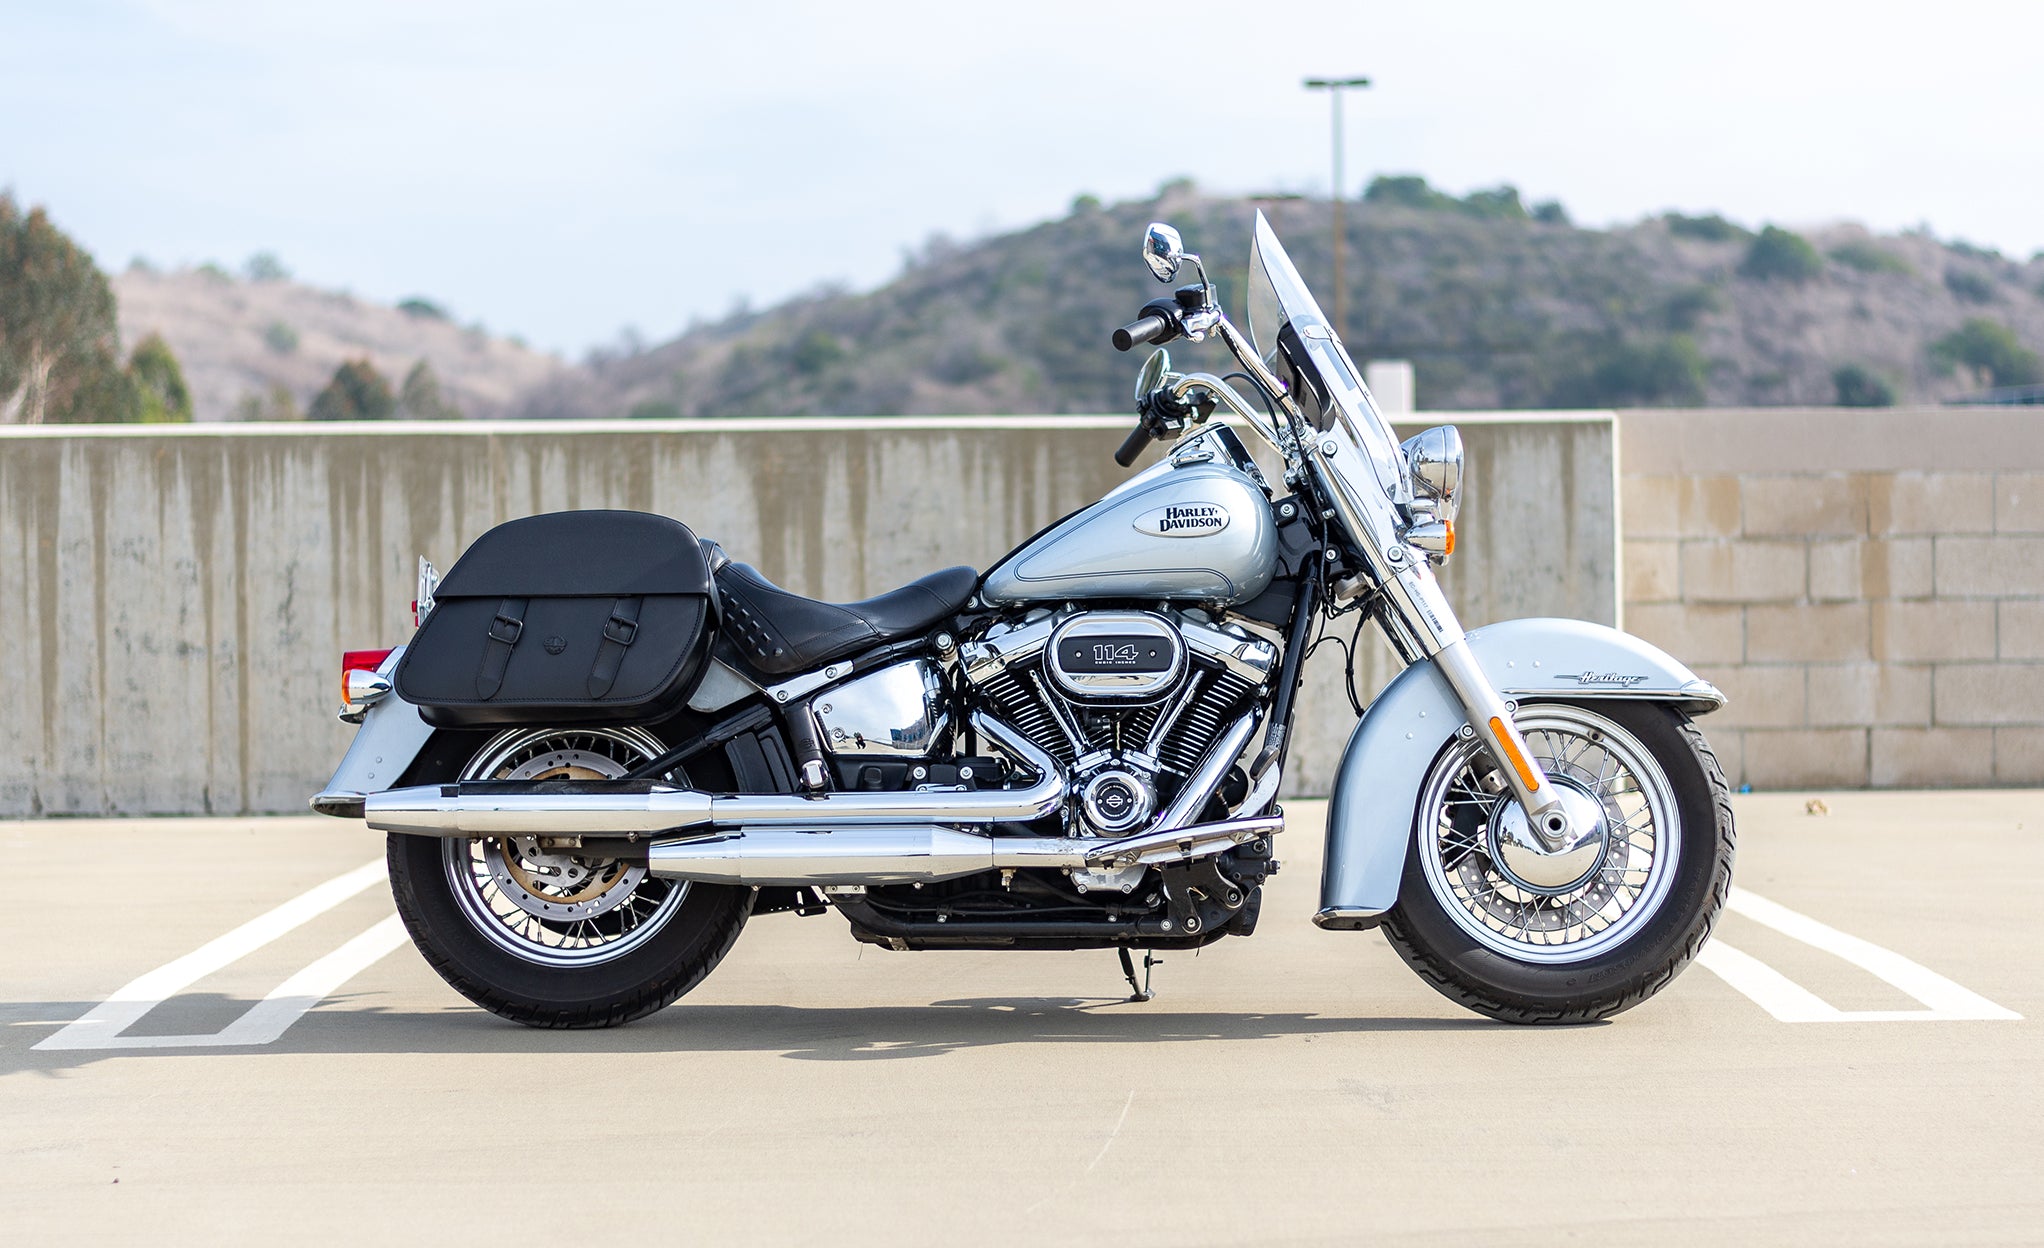 Viking Baelor Medium Leather Motorcycle Saddlebags For Harley Davidson Softail Heritage Flst I C Ci @expand